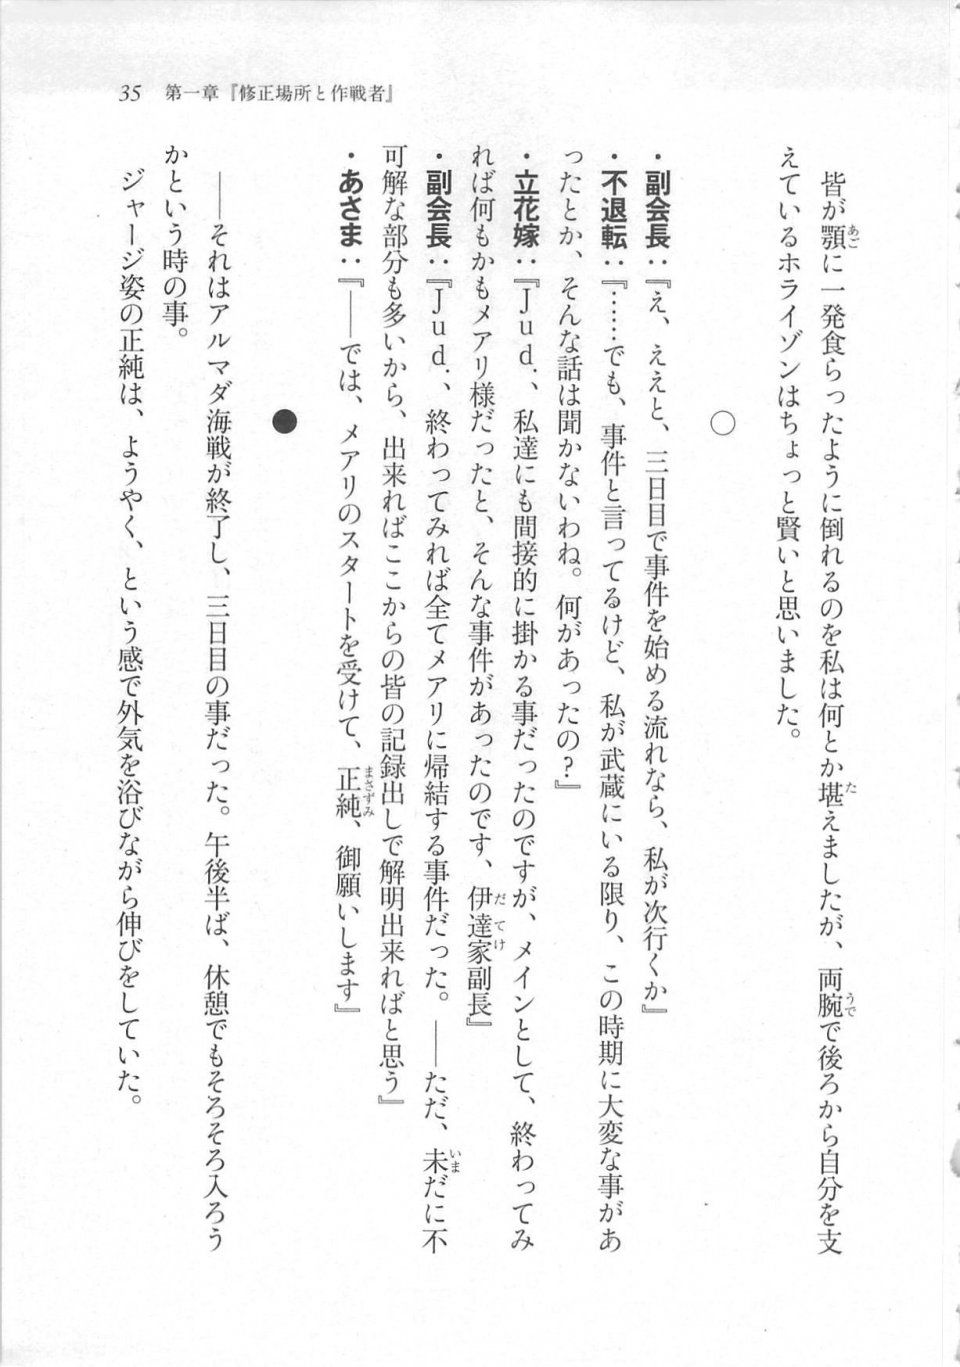 Kyoukai Senjou no Horizon LN Sidestory Vol 3 - Photo #39